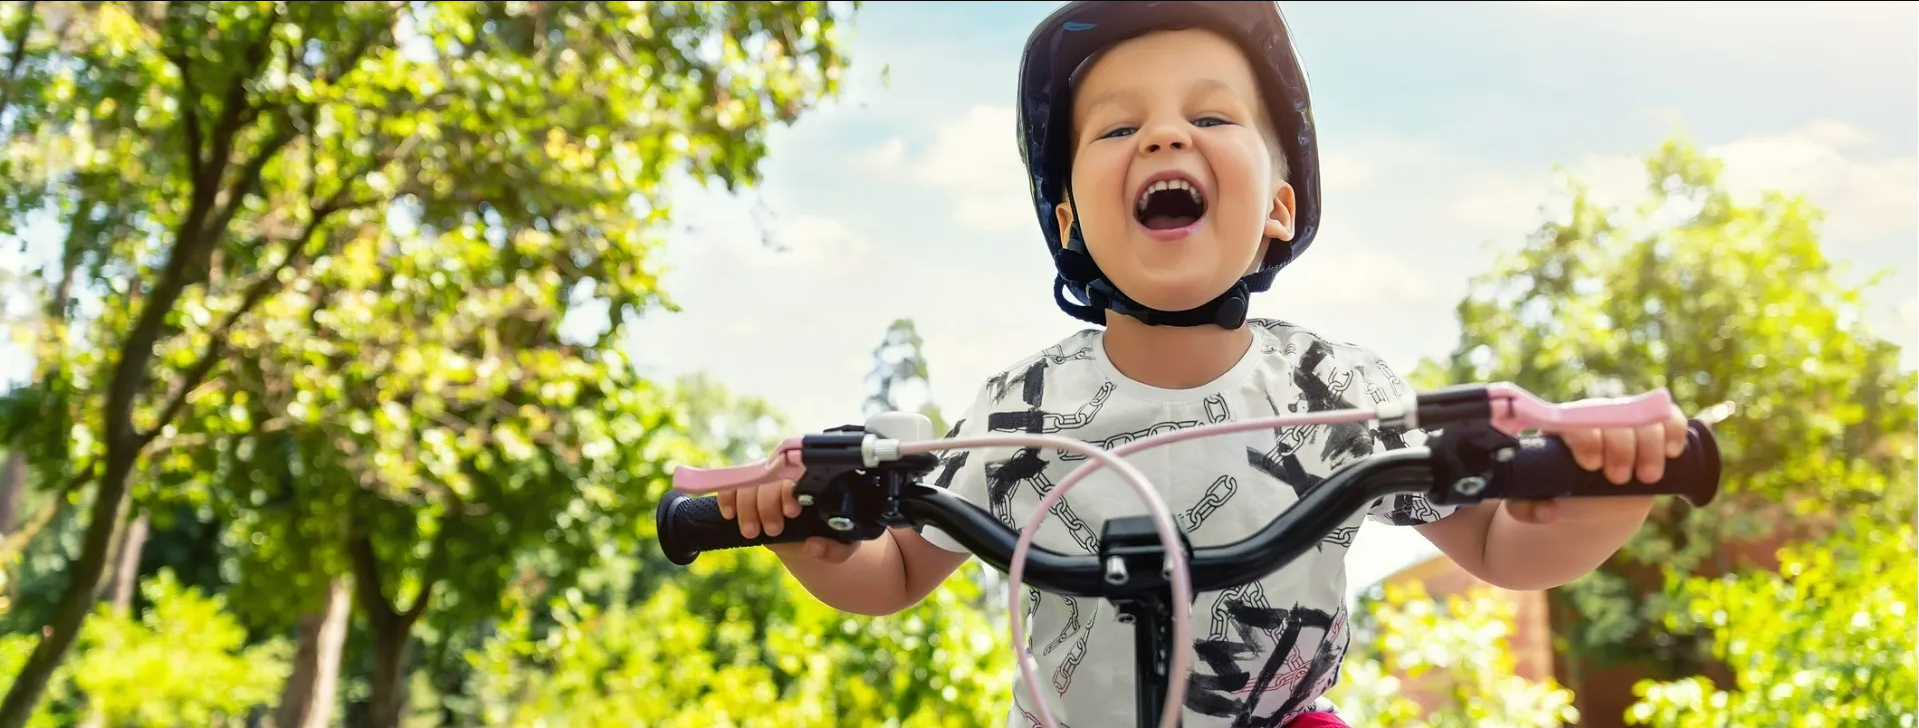 Criança sorrindo em cima de bicicleta